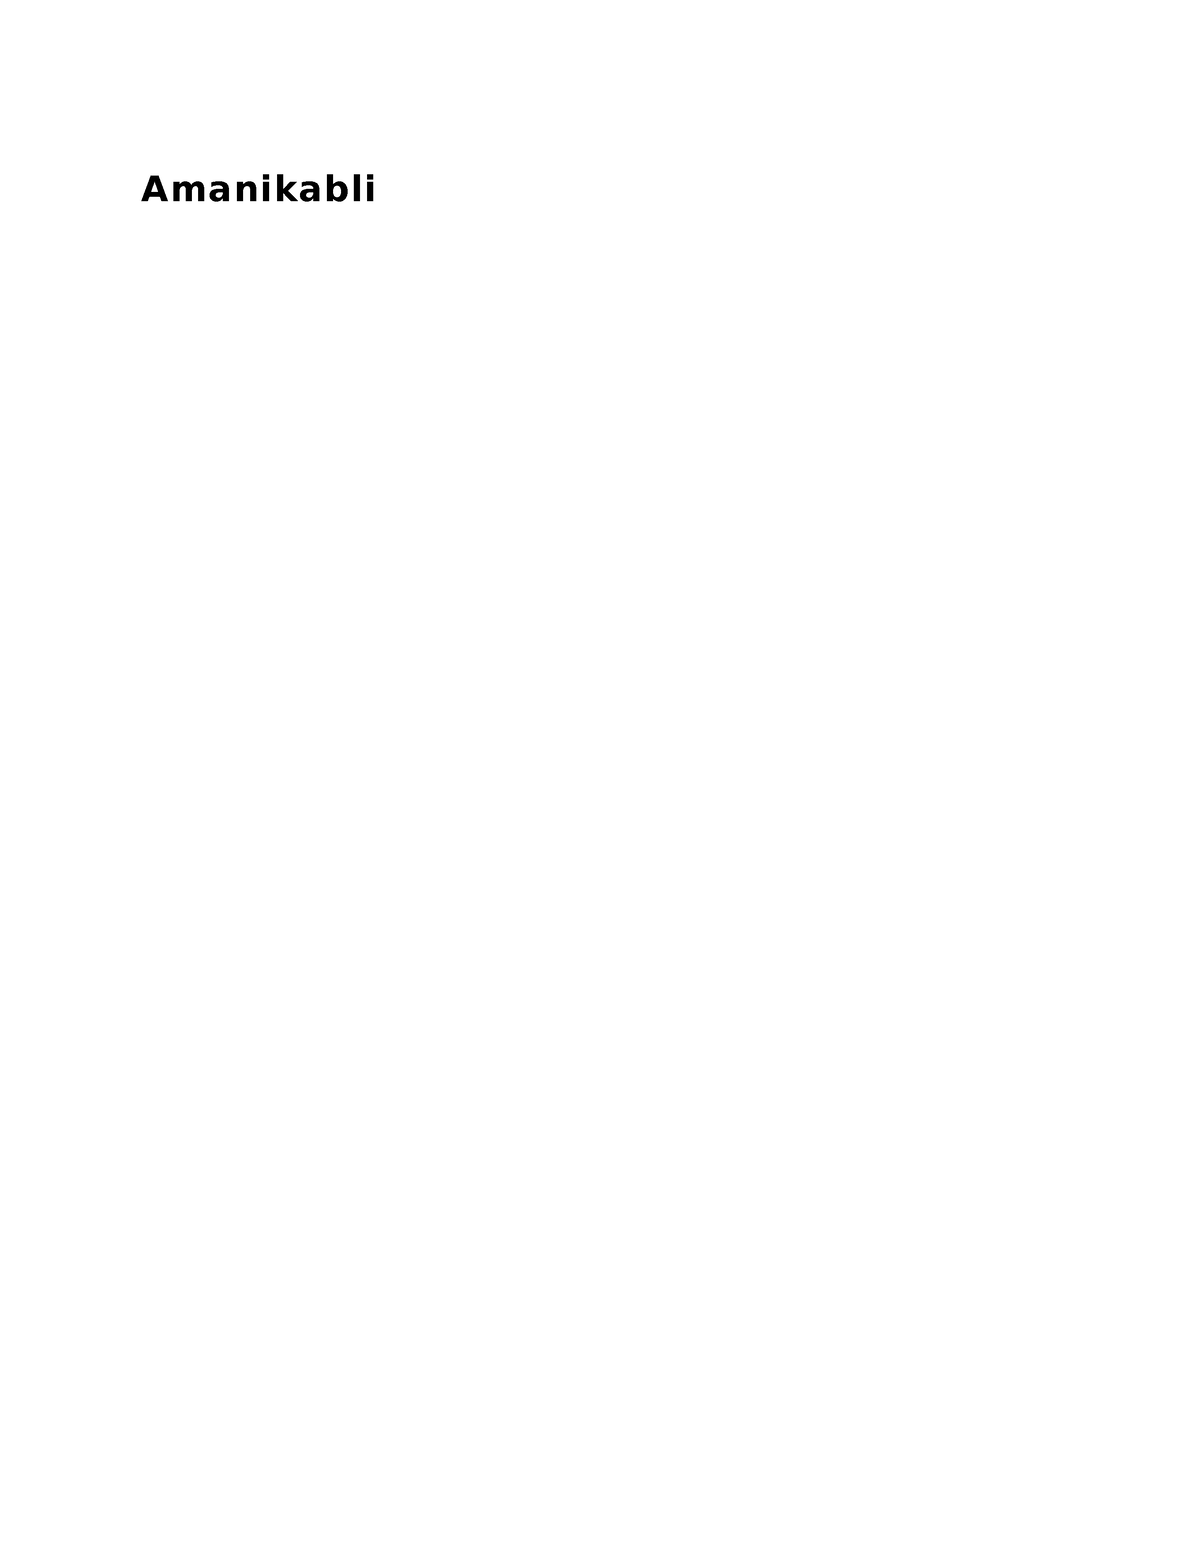 Amanikabli - Asean Literature - Amanikabli Original illustration ...